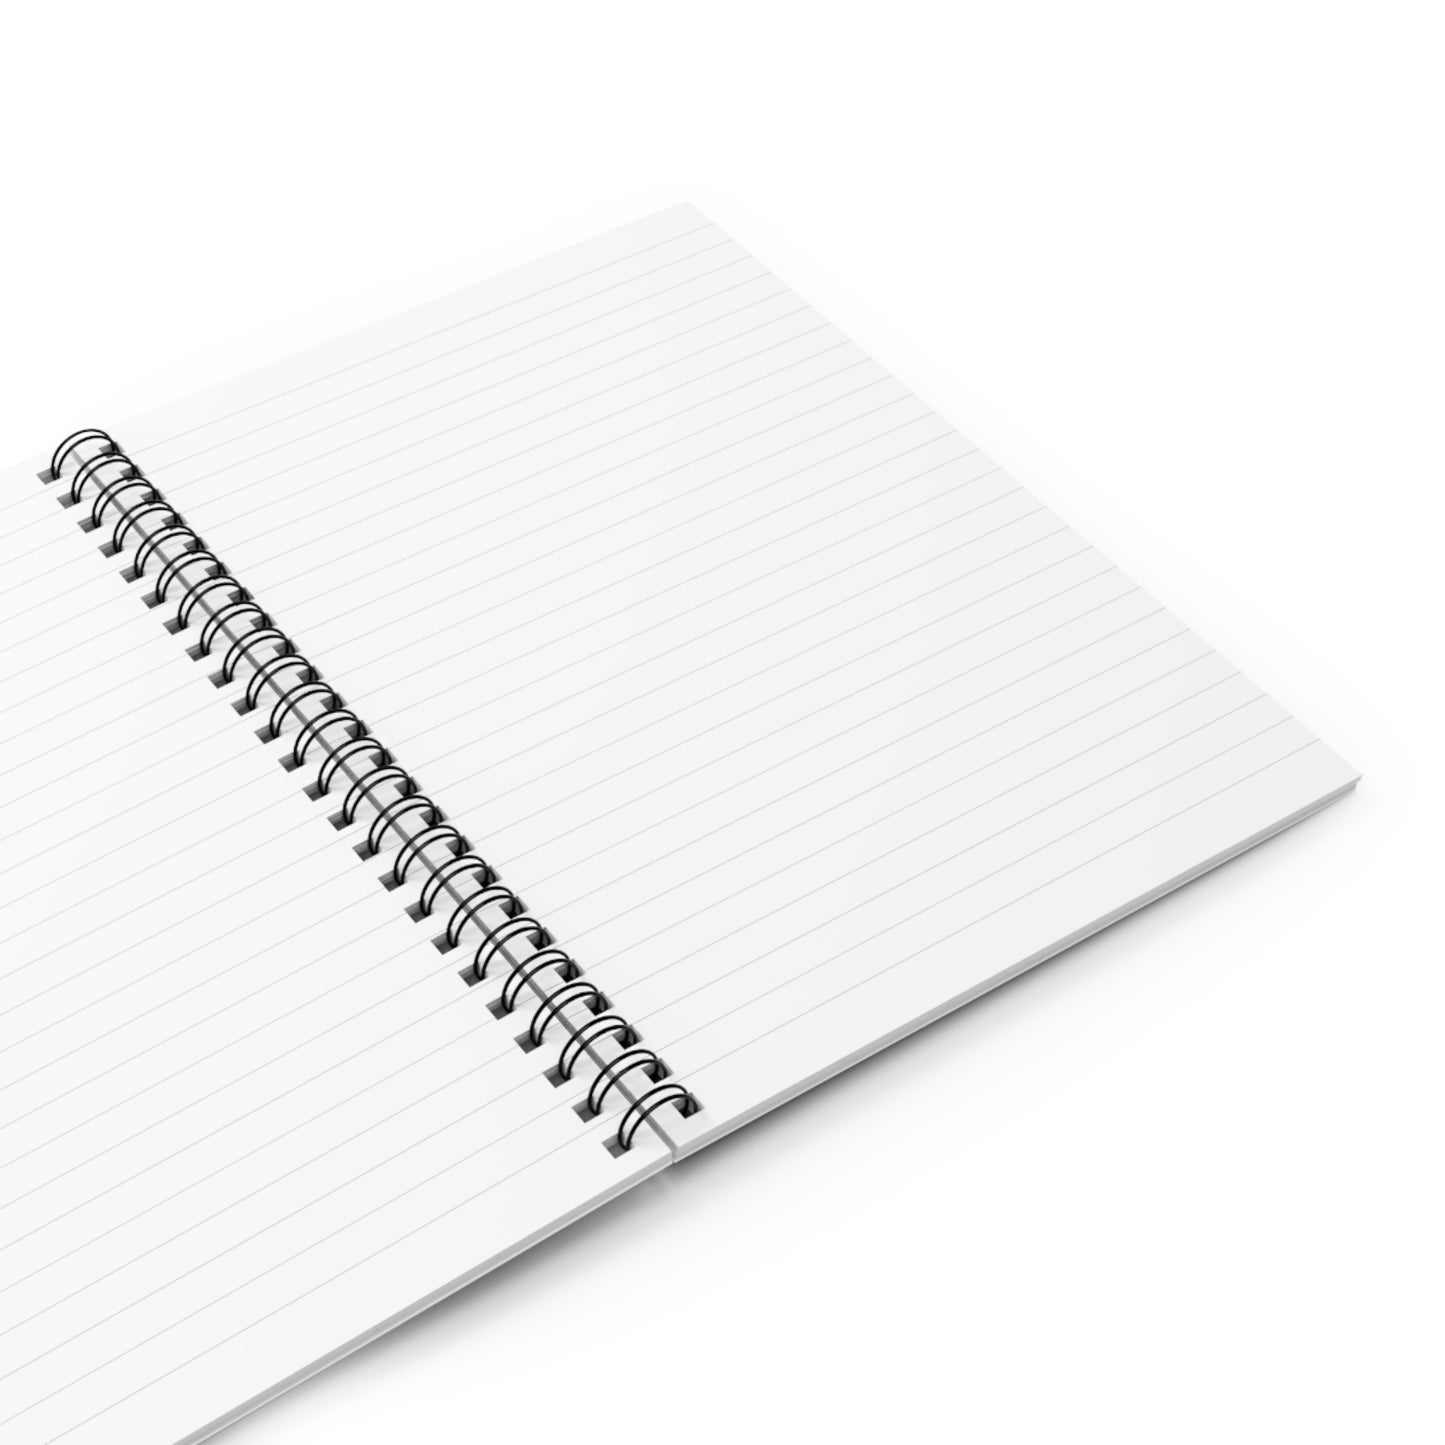 SSCA Logo Spiral Notebook - Ruled Line